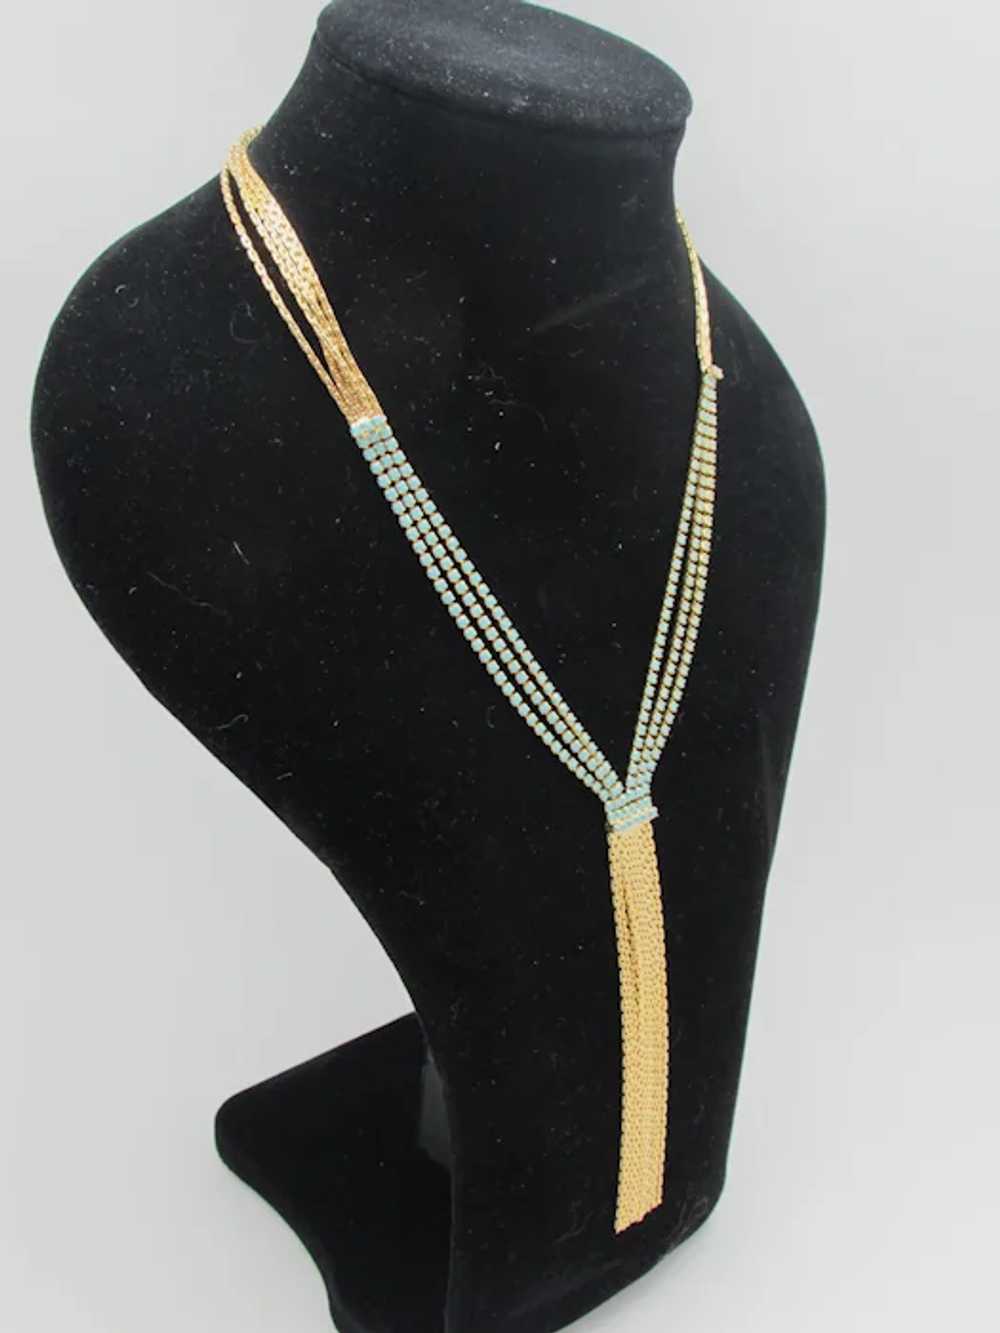 Deep V-Style Necklace with Rhinestones and Fringe - image 2